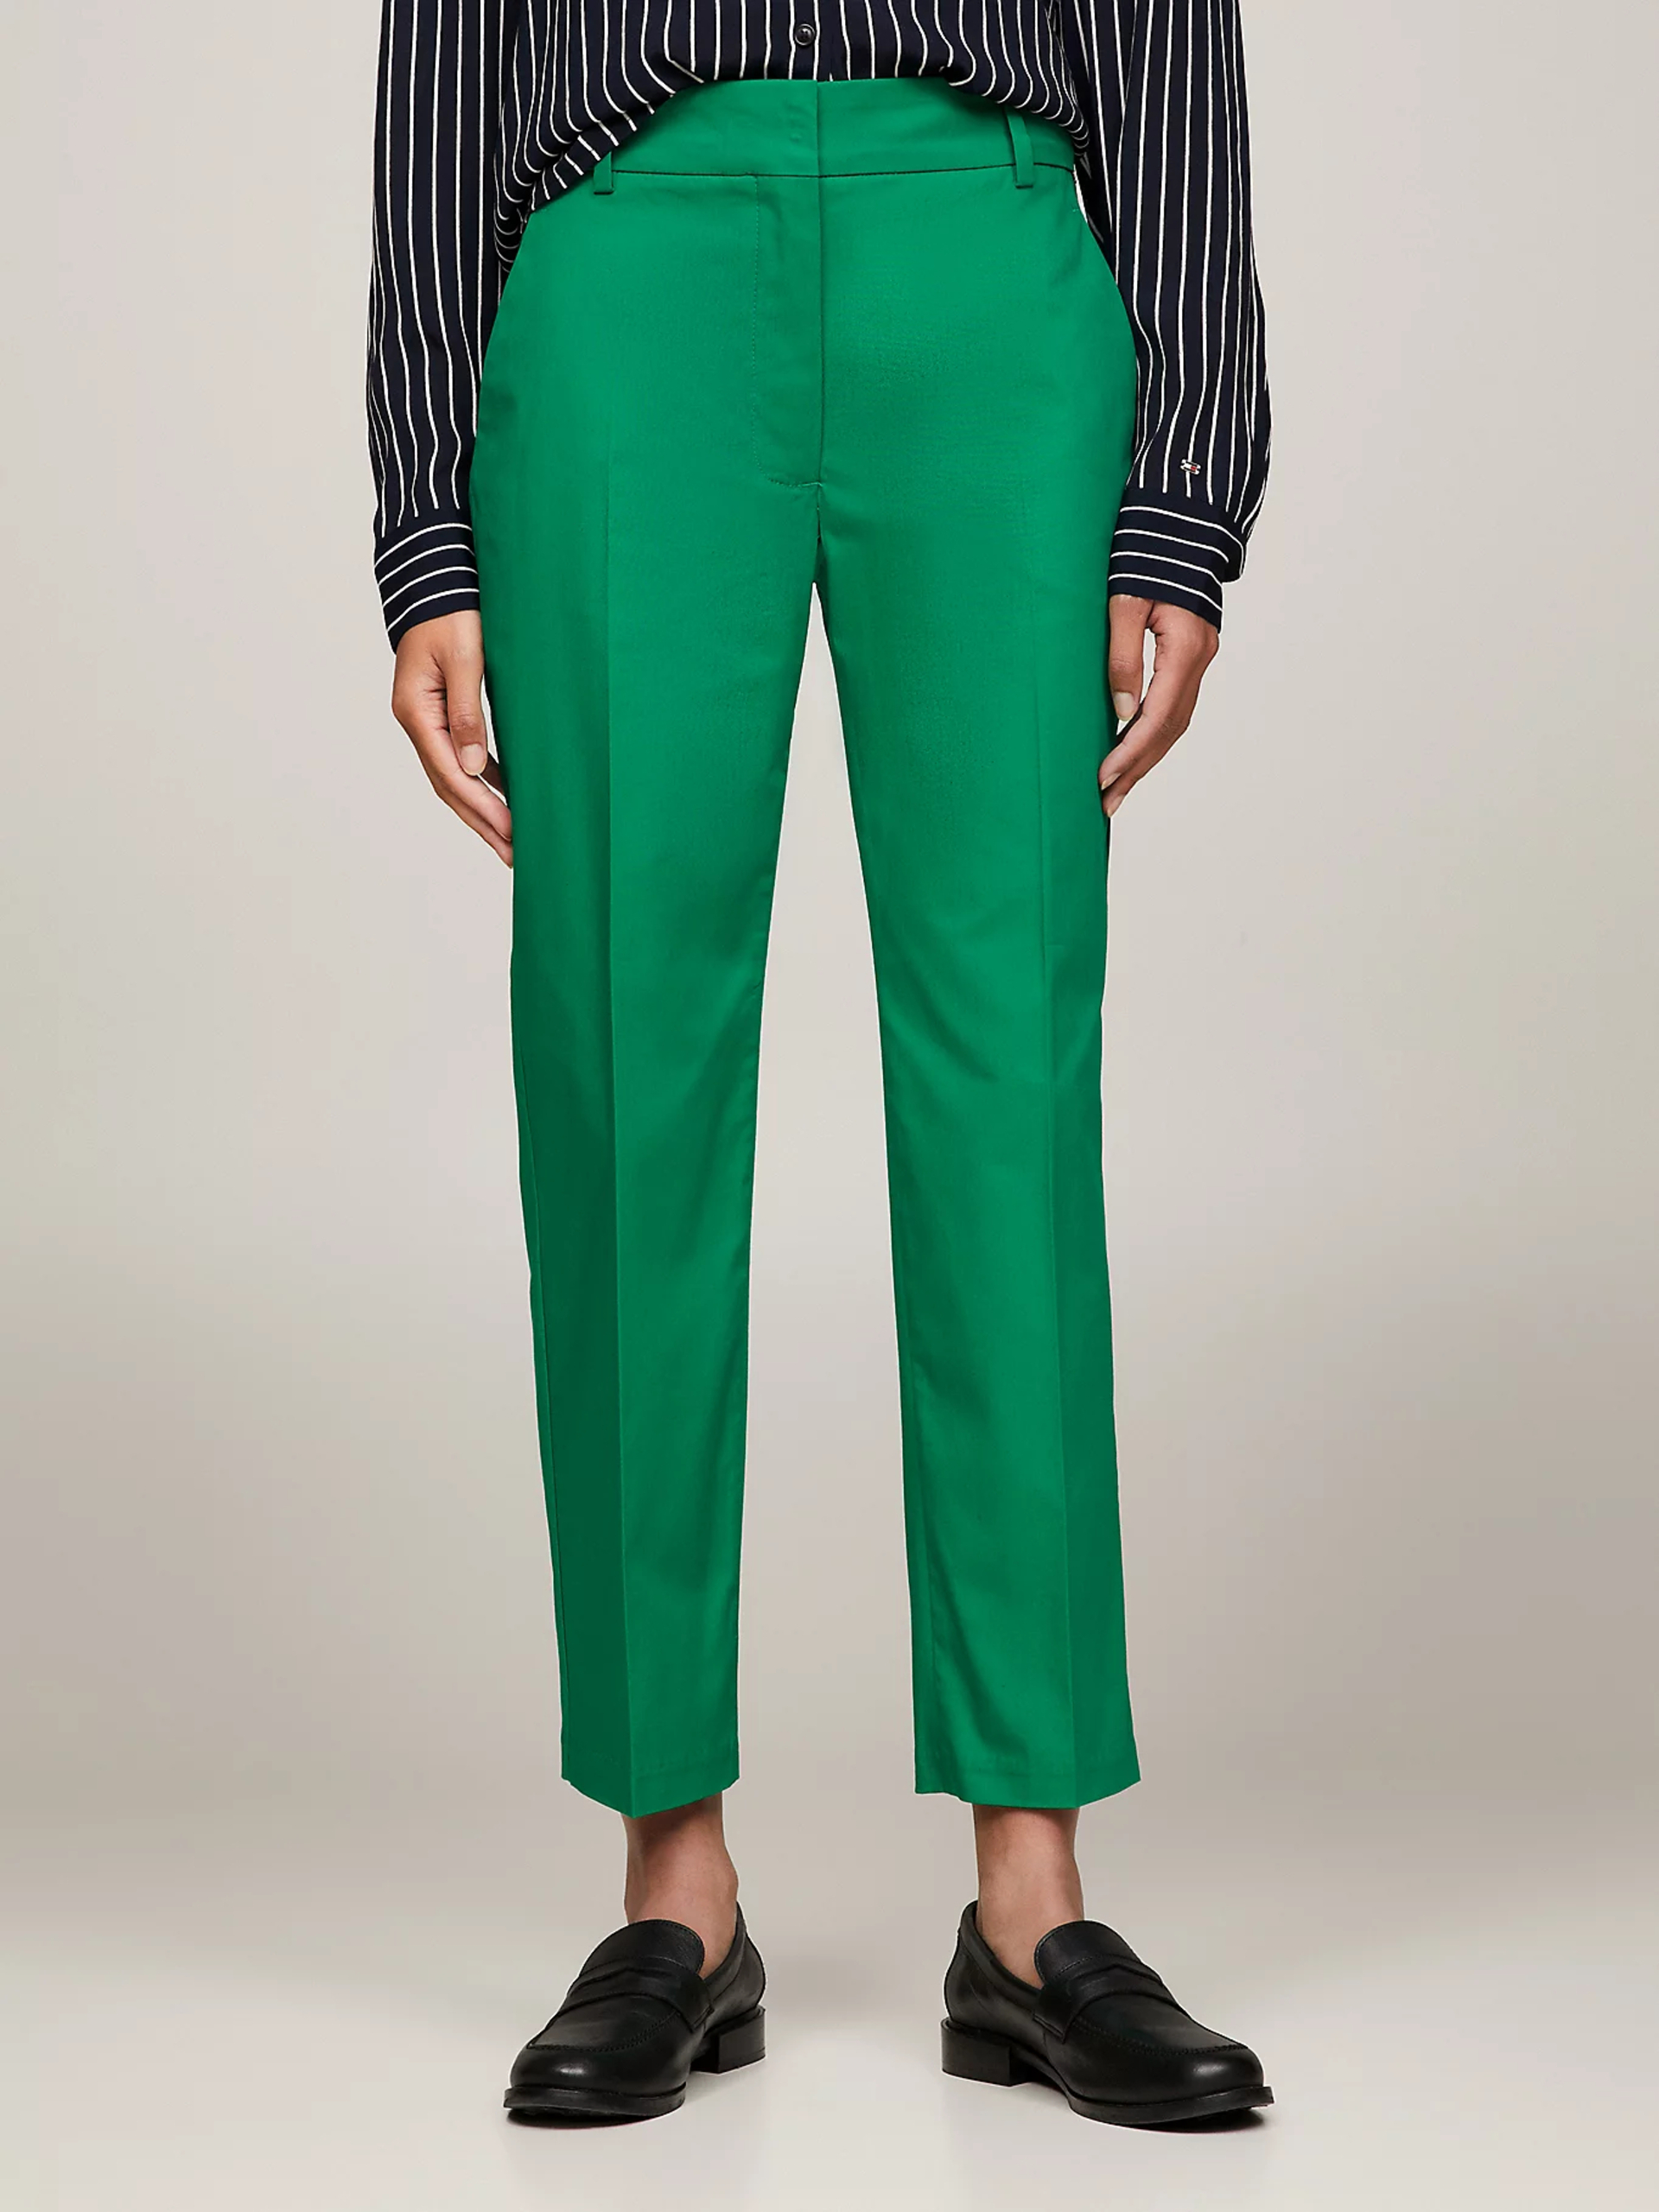 Tommy Hilfiger dámské zelené Chinos kalhoty - 40 (L4B)